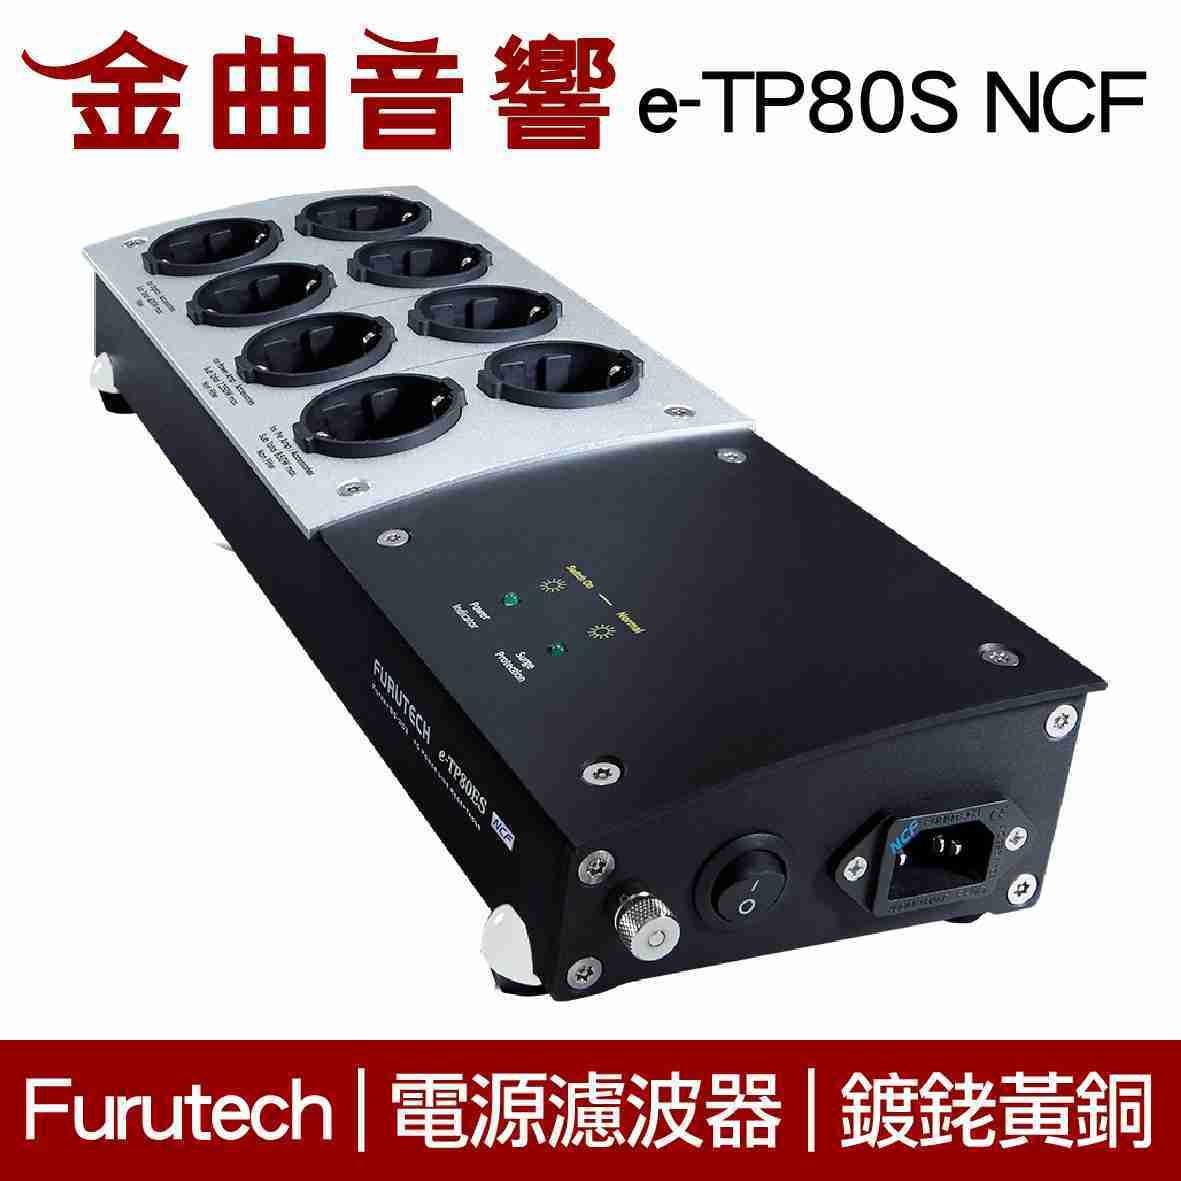 Furutech 古河 e-TP80S NCF 電源 濾波器 鍍銠 排插 分配器 | 金曲音響